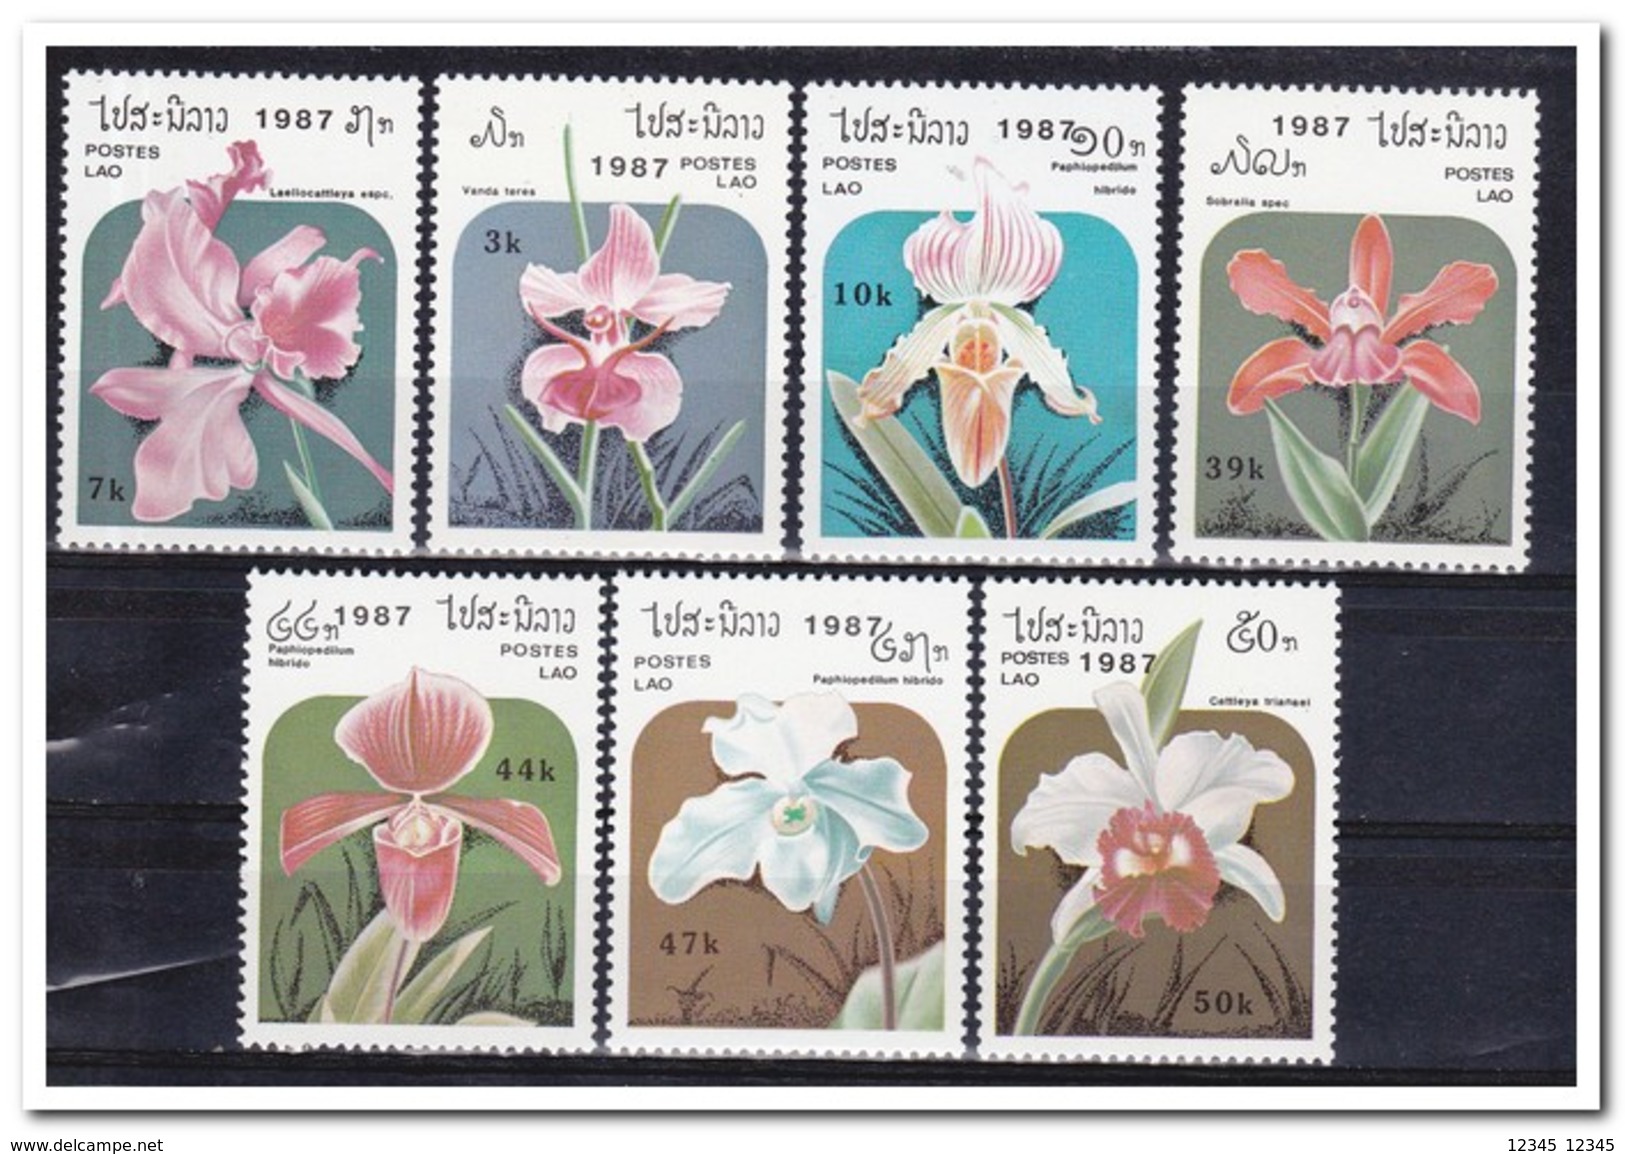 Laos 1987, Postfris MNH, Flowers, Orchids - Laos